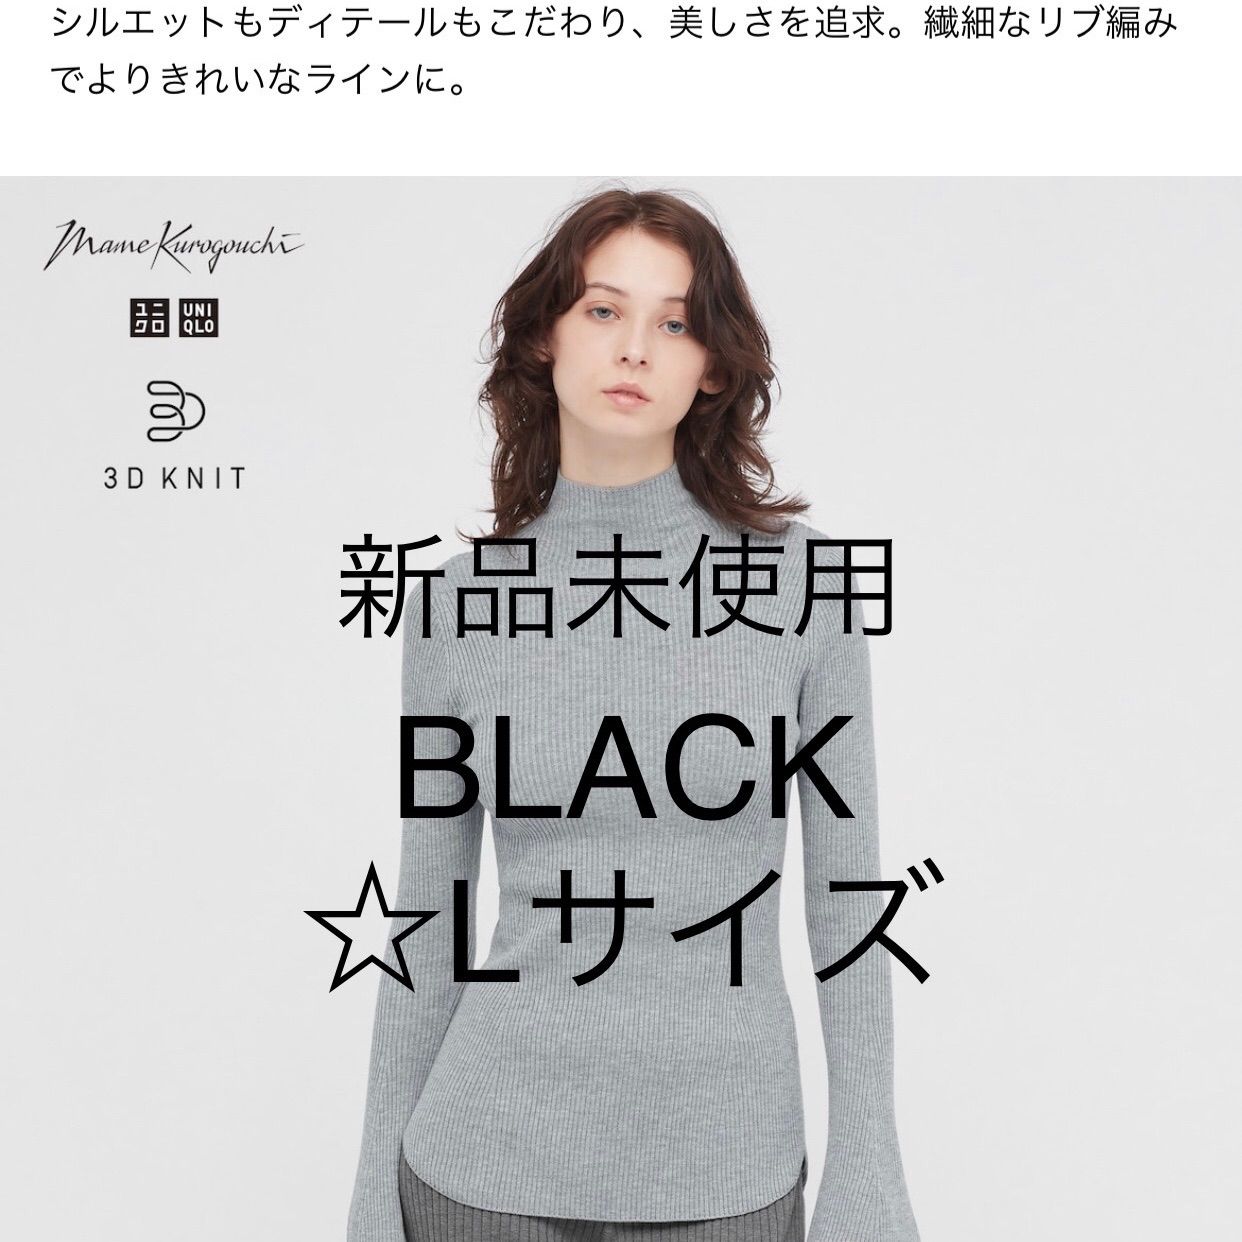 ユニクロ×マメ リブハイネックセーター ブラック Lサイズ - メルカリ